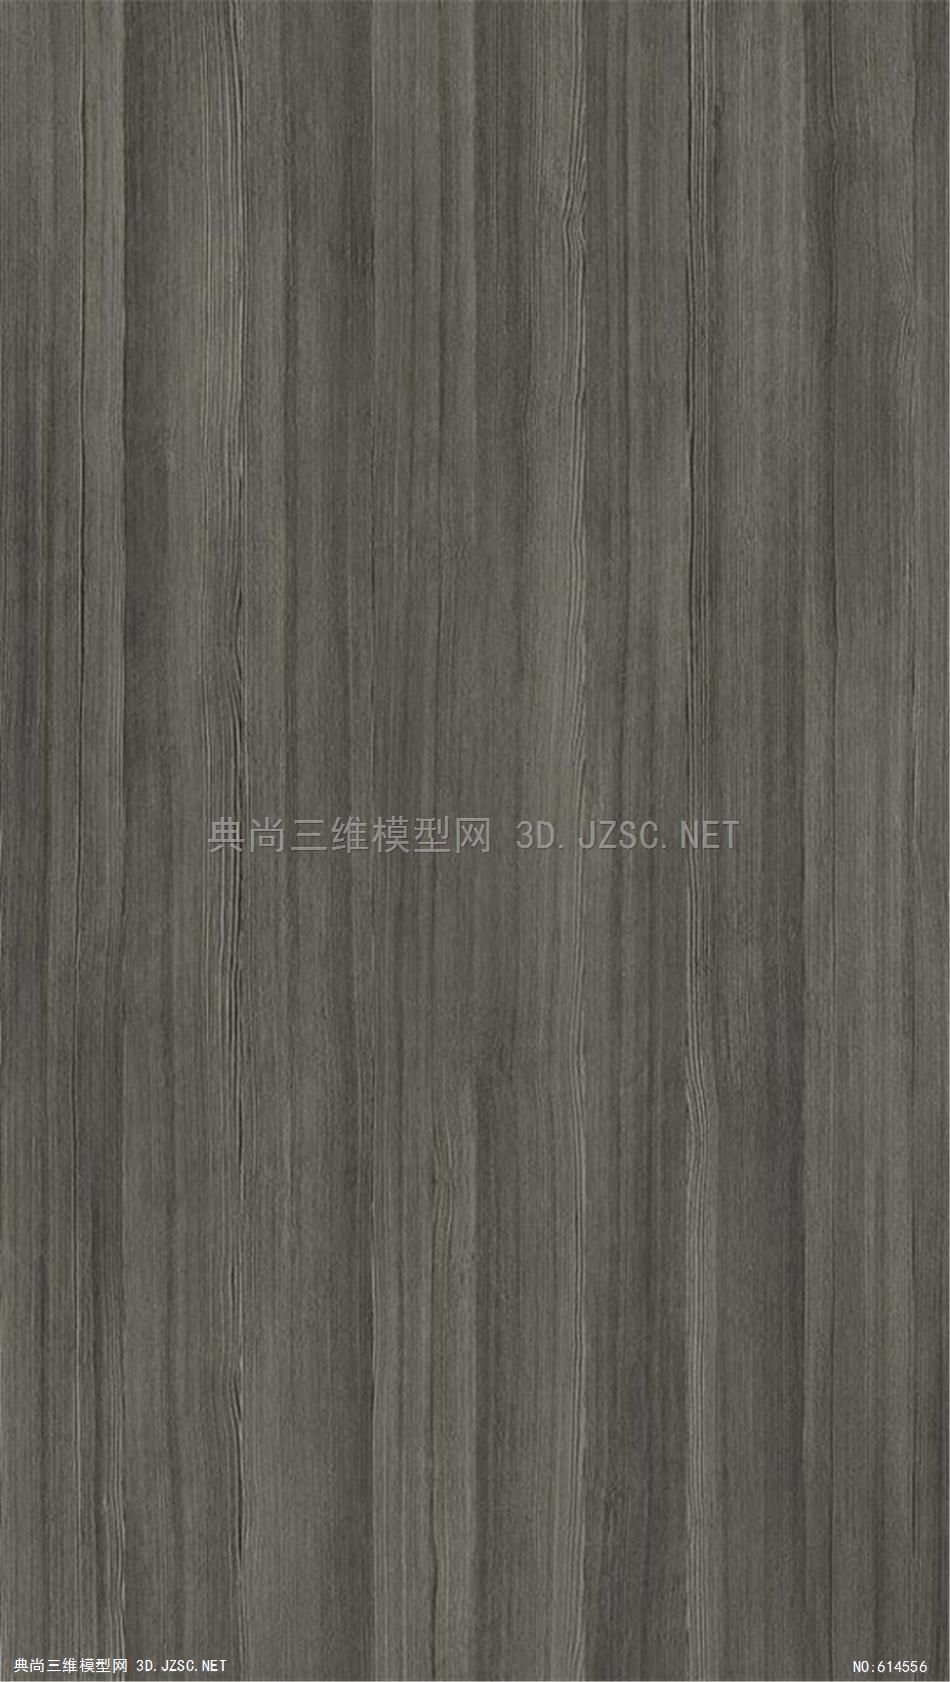 木饰面 木纹 木材  高清材质贴图 (340)